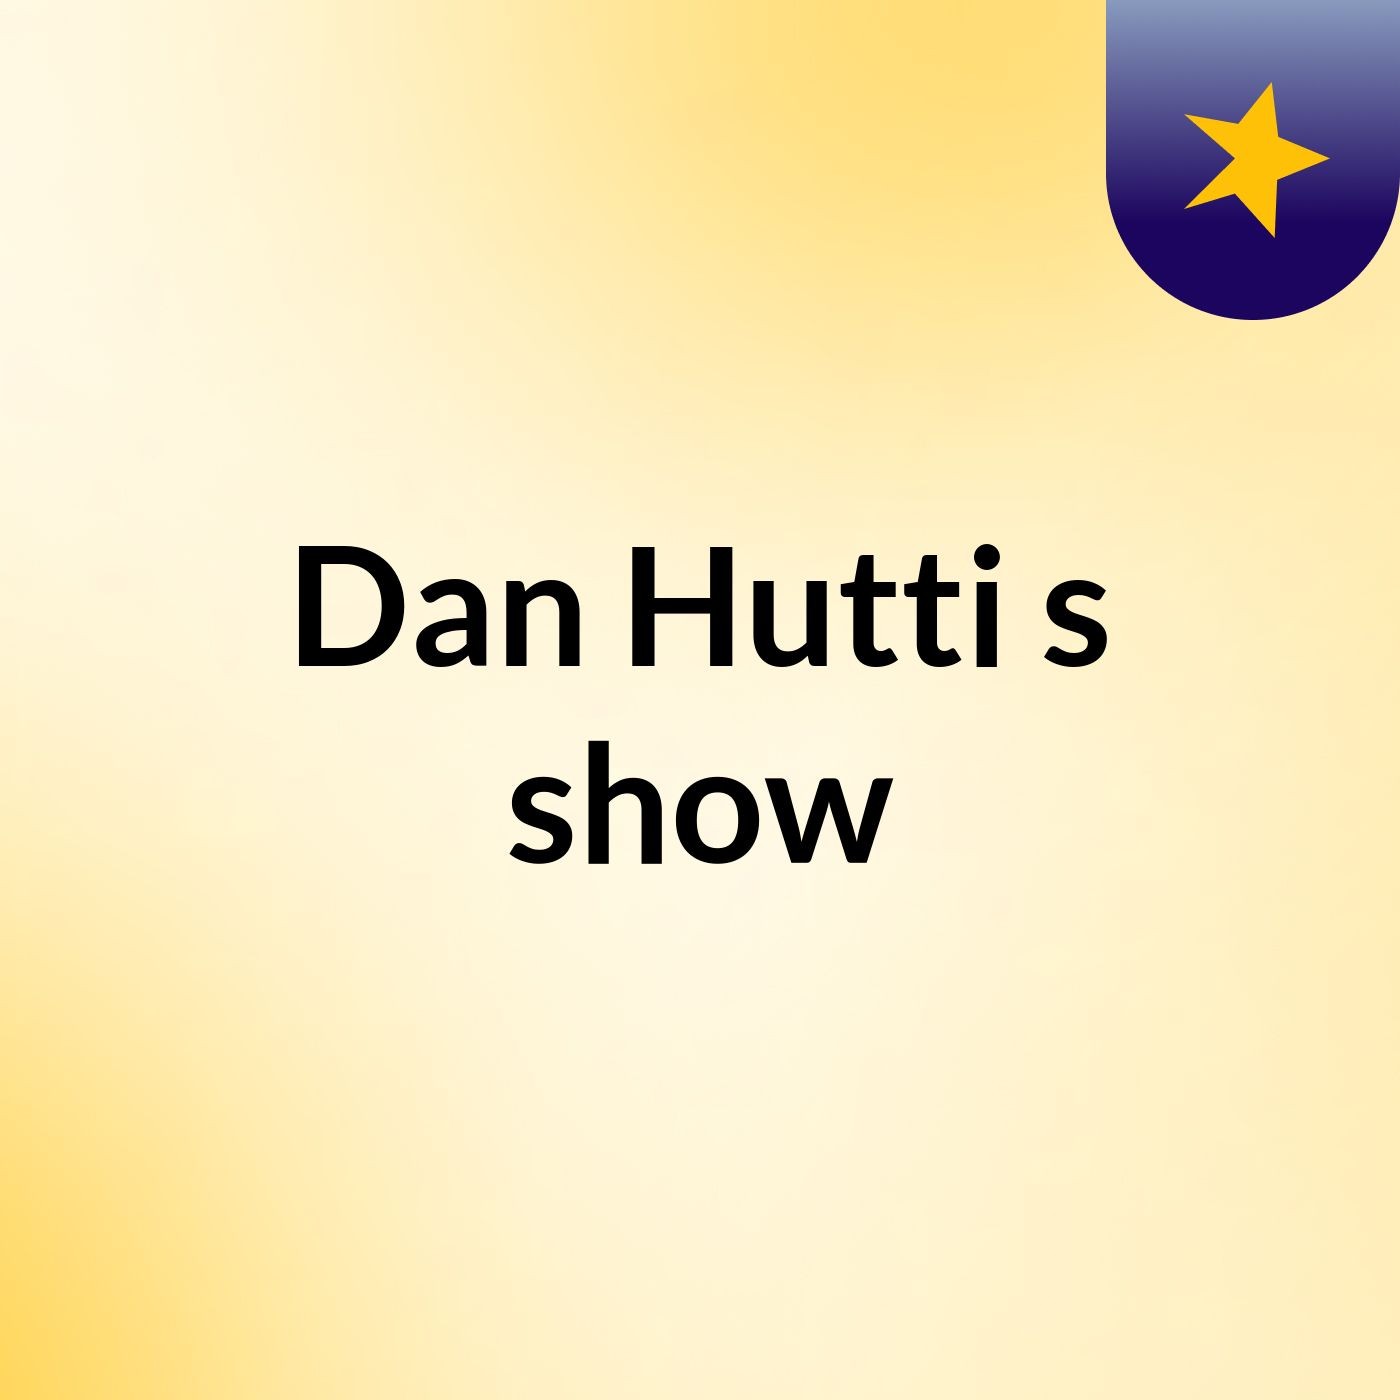 Dan Hutti's show